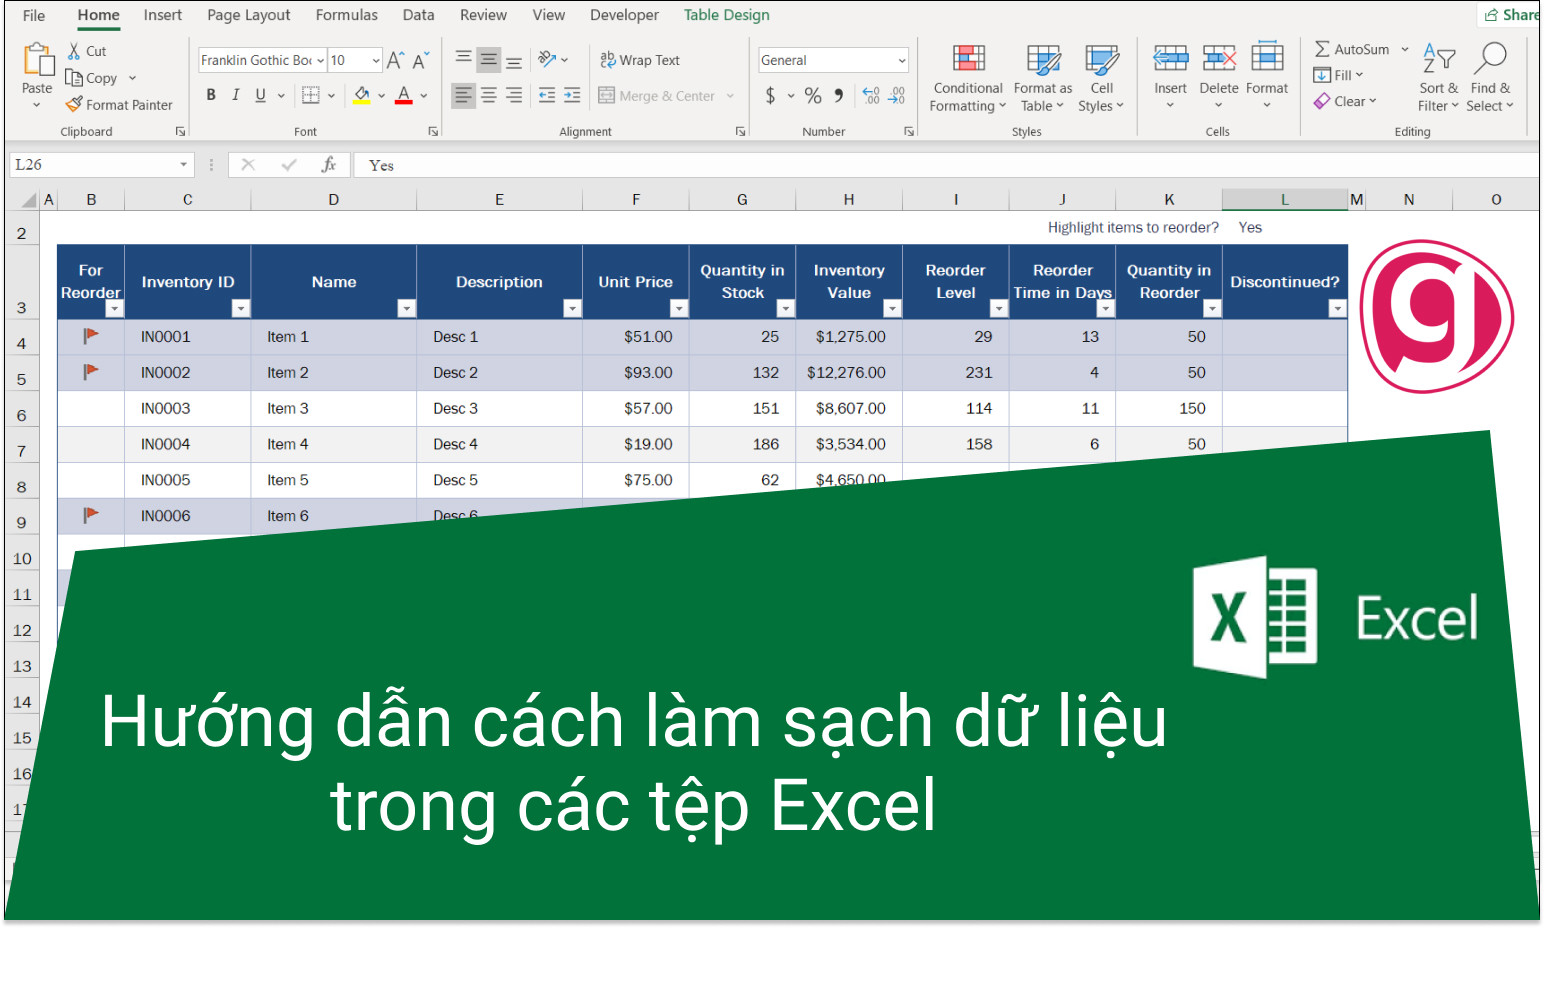 Hướng dẫn cách làm sạch dữ liệu trong các tệp Excel